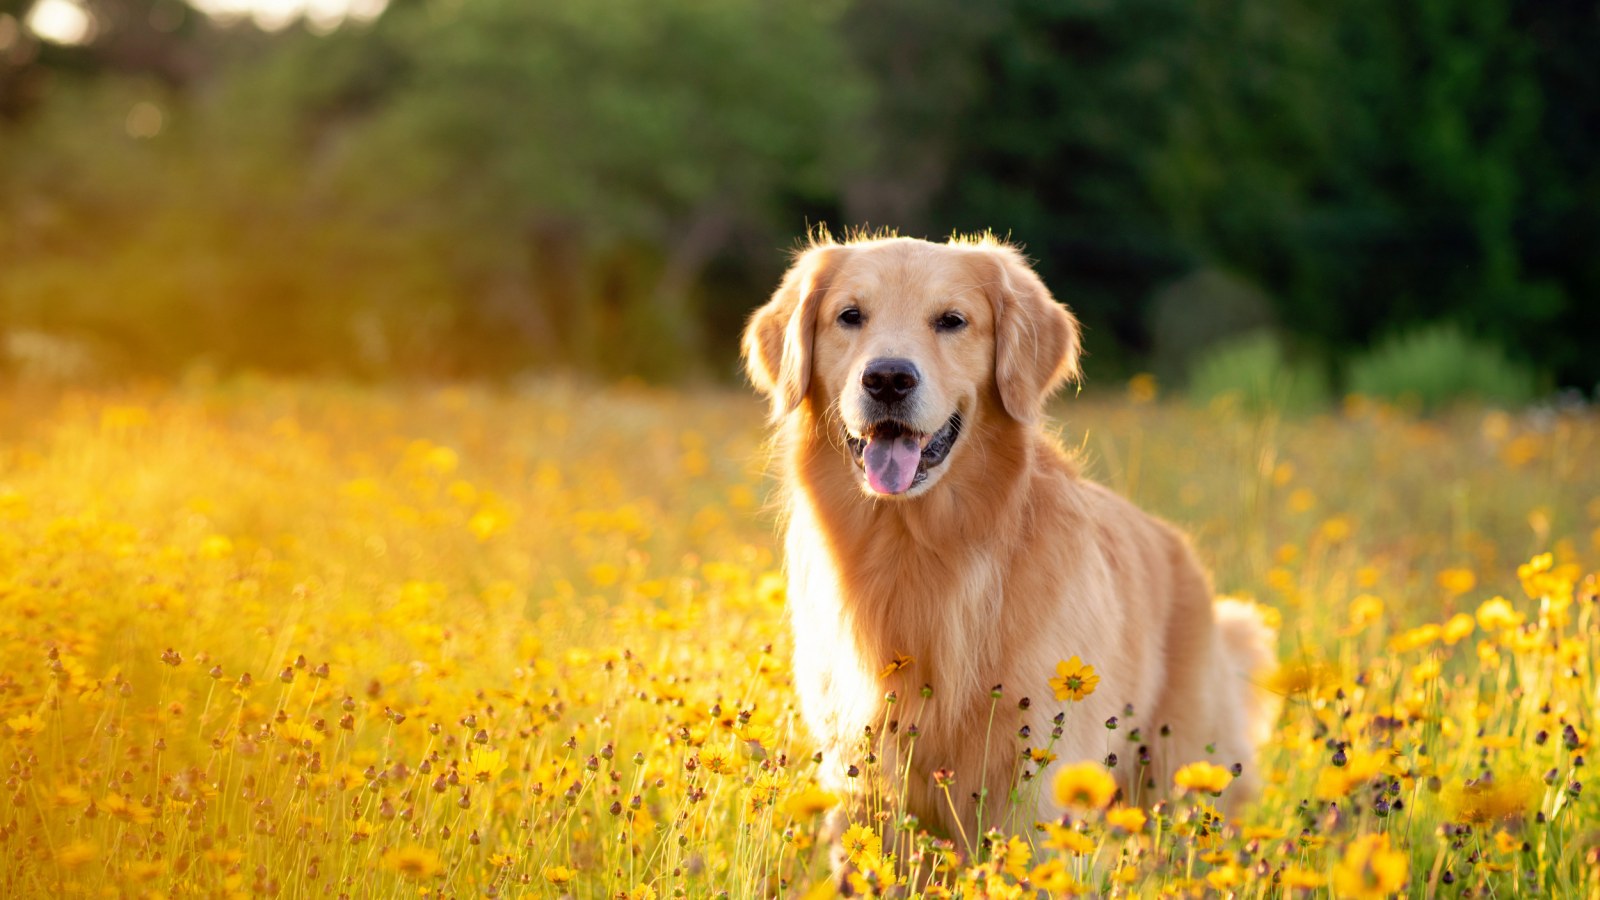 Chó Golden là một giống chó đáng yêu và thân thiện. Nhìn thấy chú chó trong bức ảnh này, bạn sẽ không thể nhịn được cười với cảm giác hạnh phúc mà nó mang lại. Hãy nhấp vào hình ảnh để cảm nhận sự ấm áp của tình bạn giữa con người và chú chó Golden.